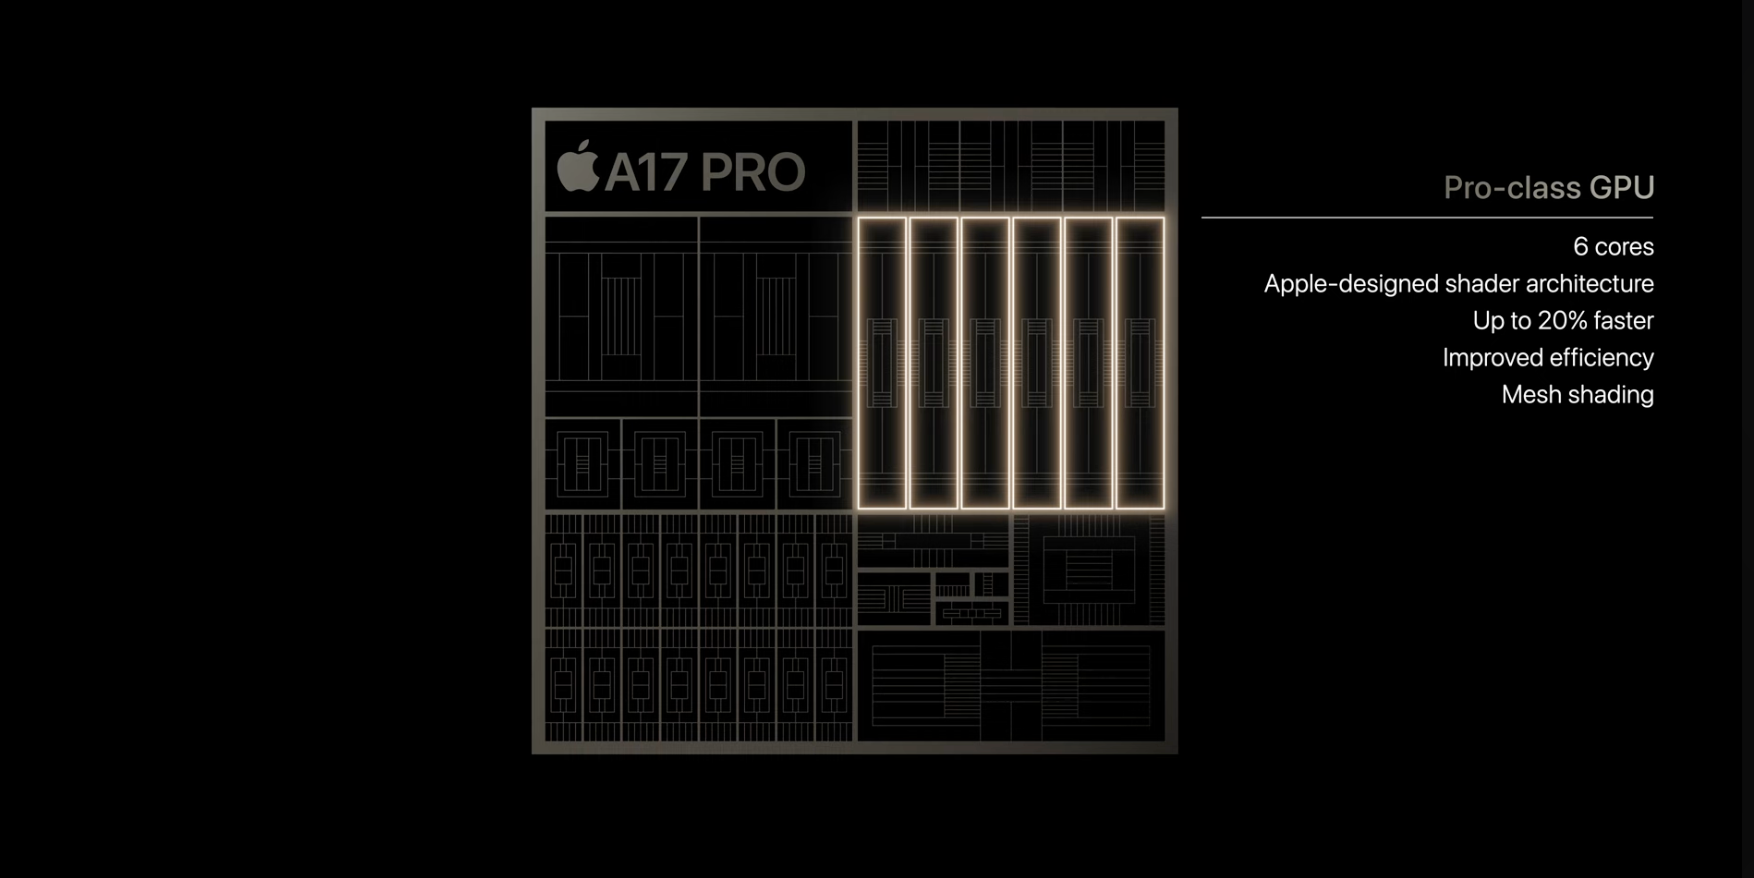 پردازنده گرافیکی در A17 Pro